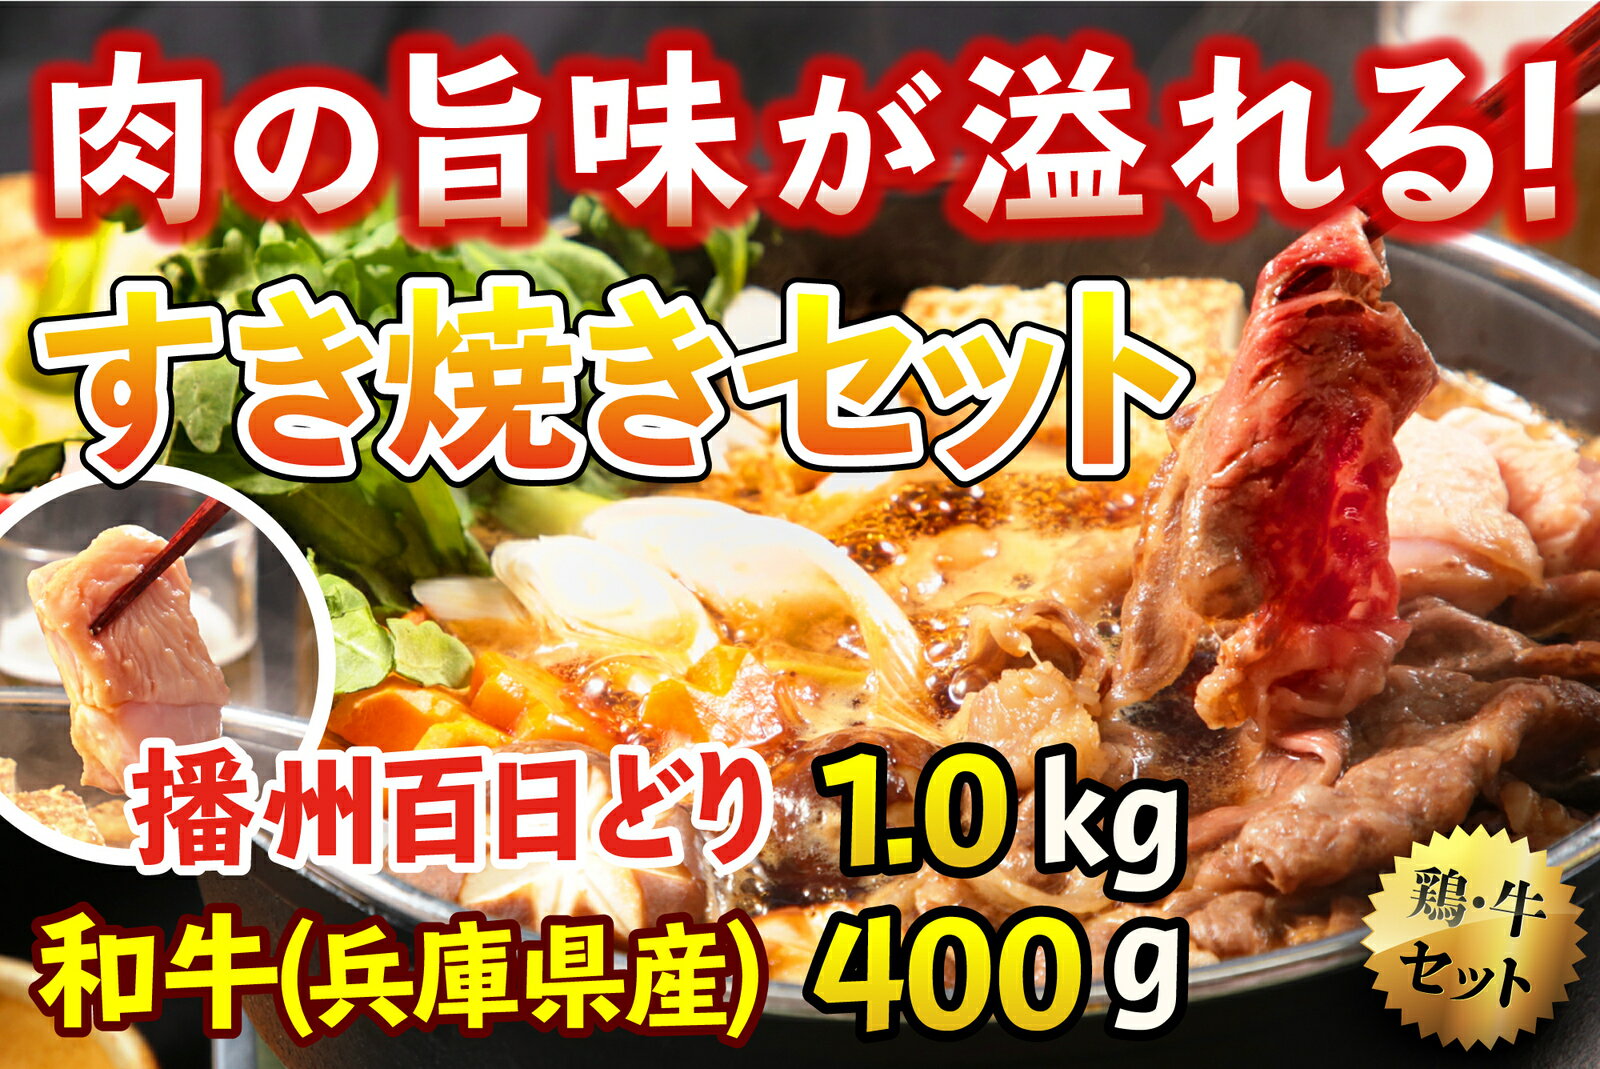 播州百日どりのモモムネと兵庫県産和牛ロースをすき焼きセットにしました 超話題新作 466 肉の旨味が溢れる すき焼きセット